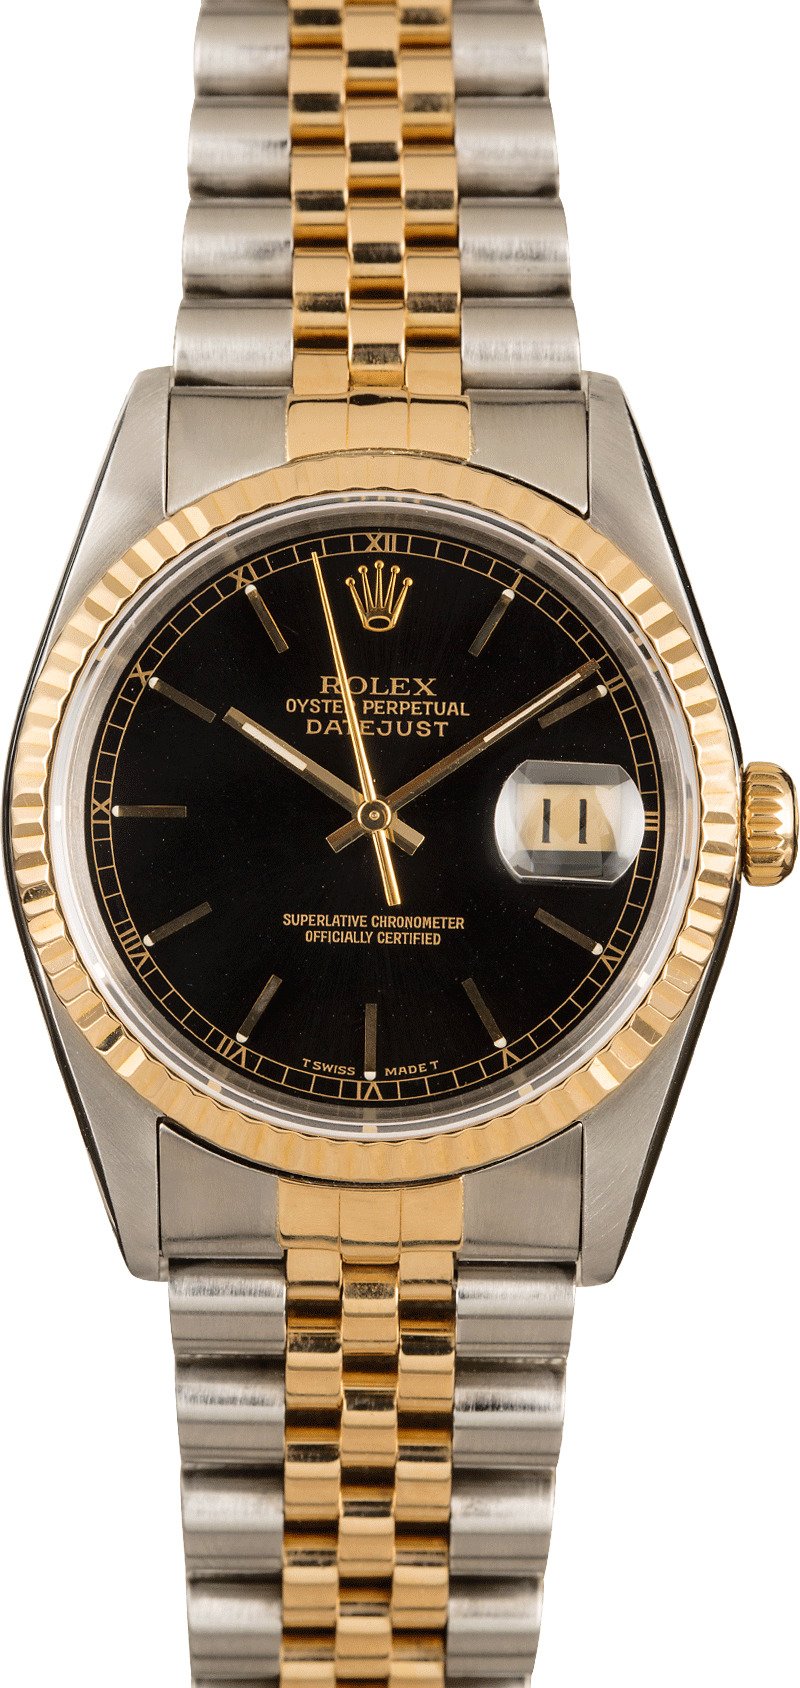 rolex watch price 16233